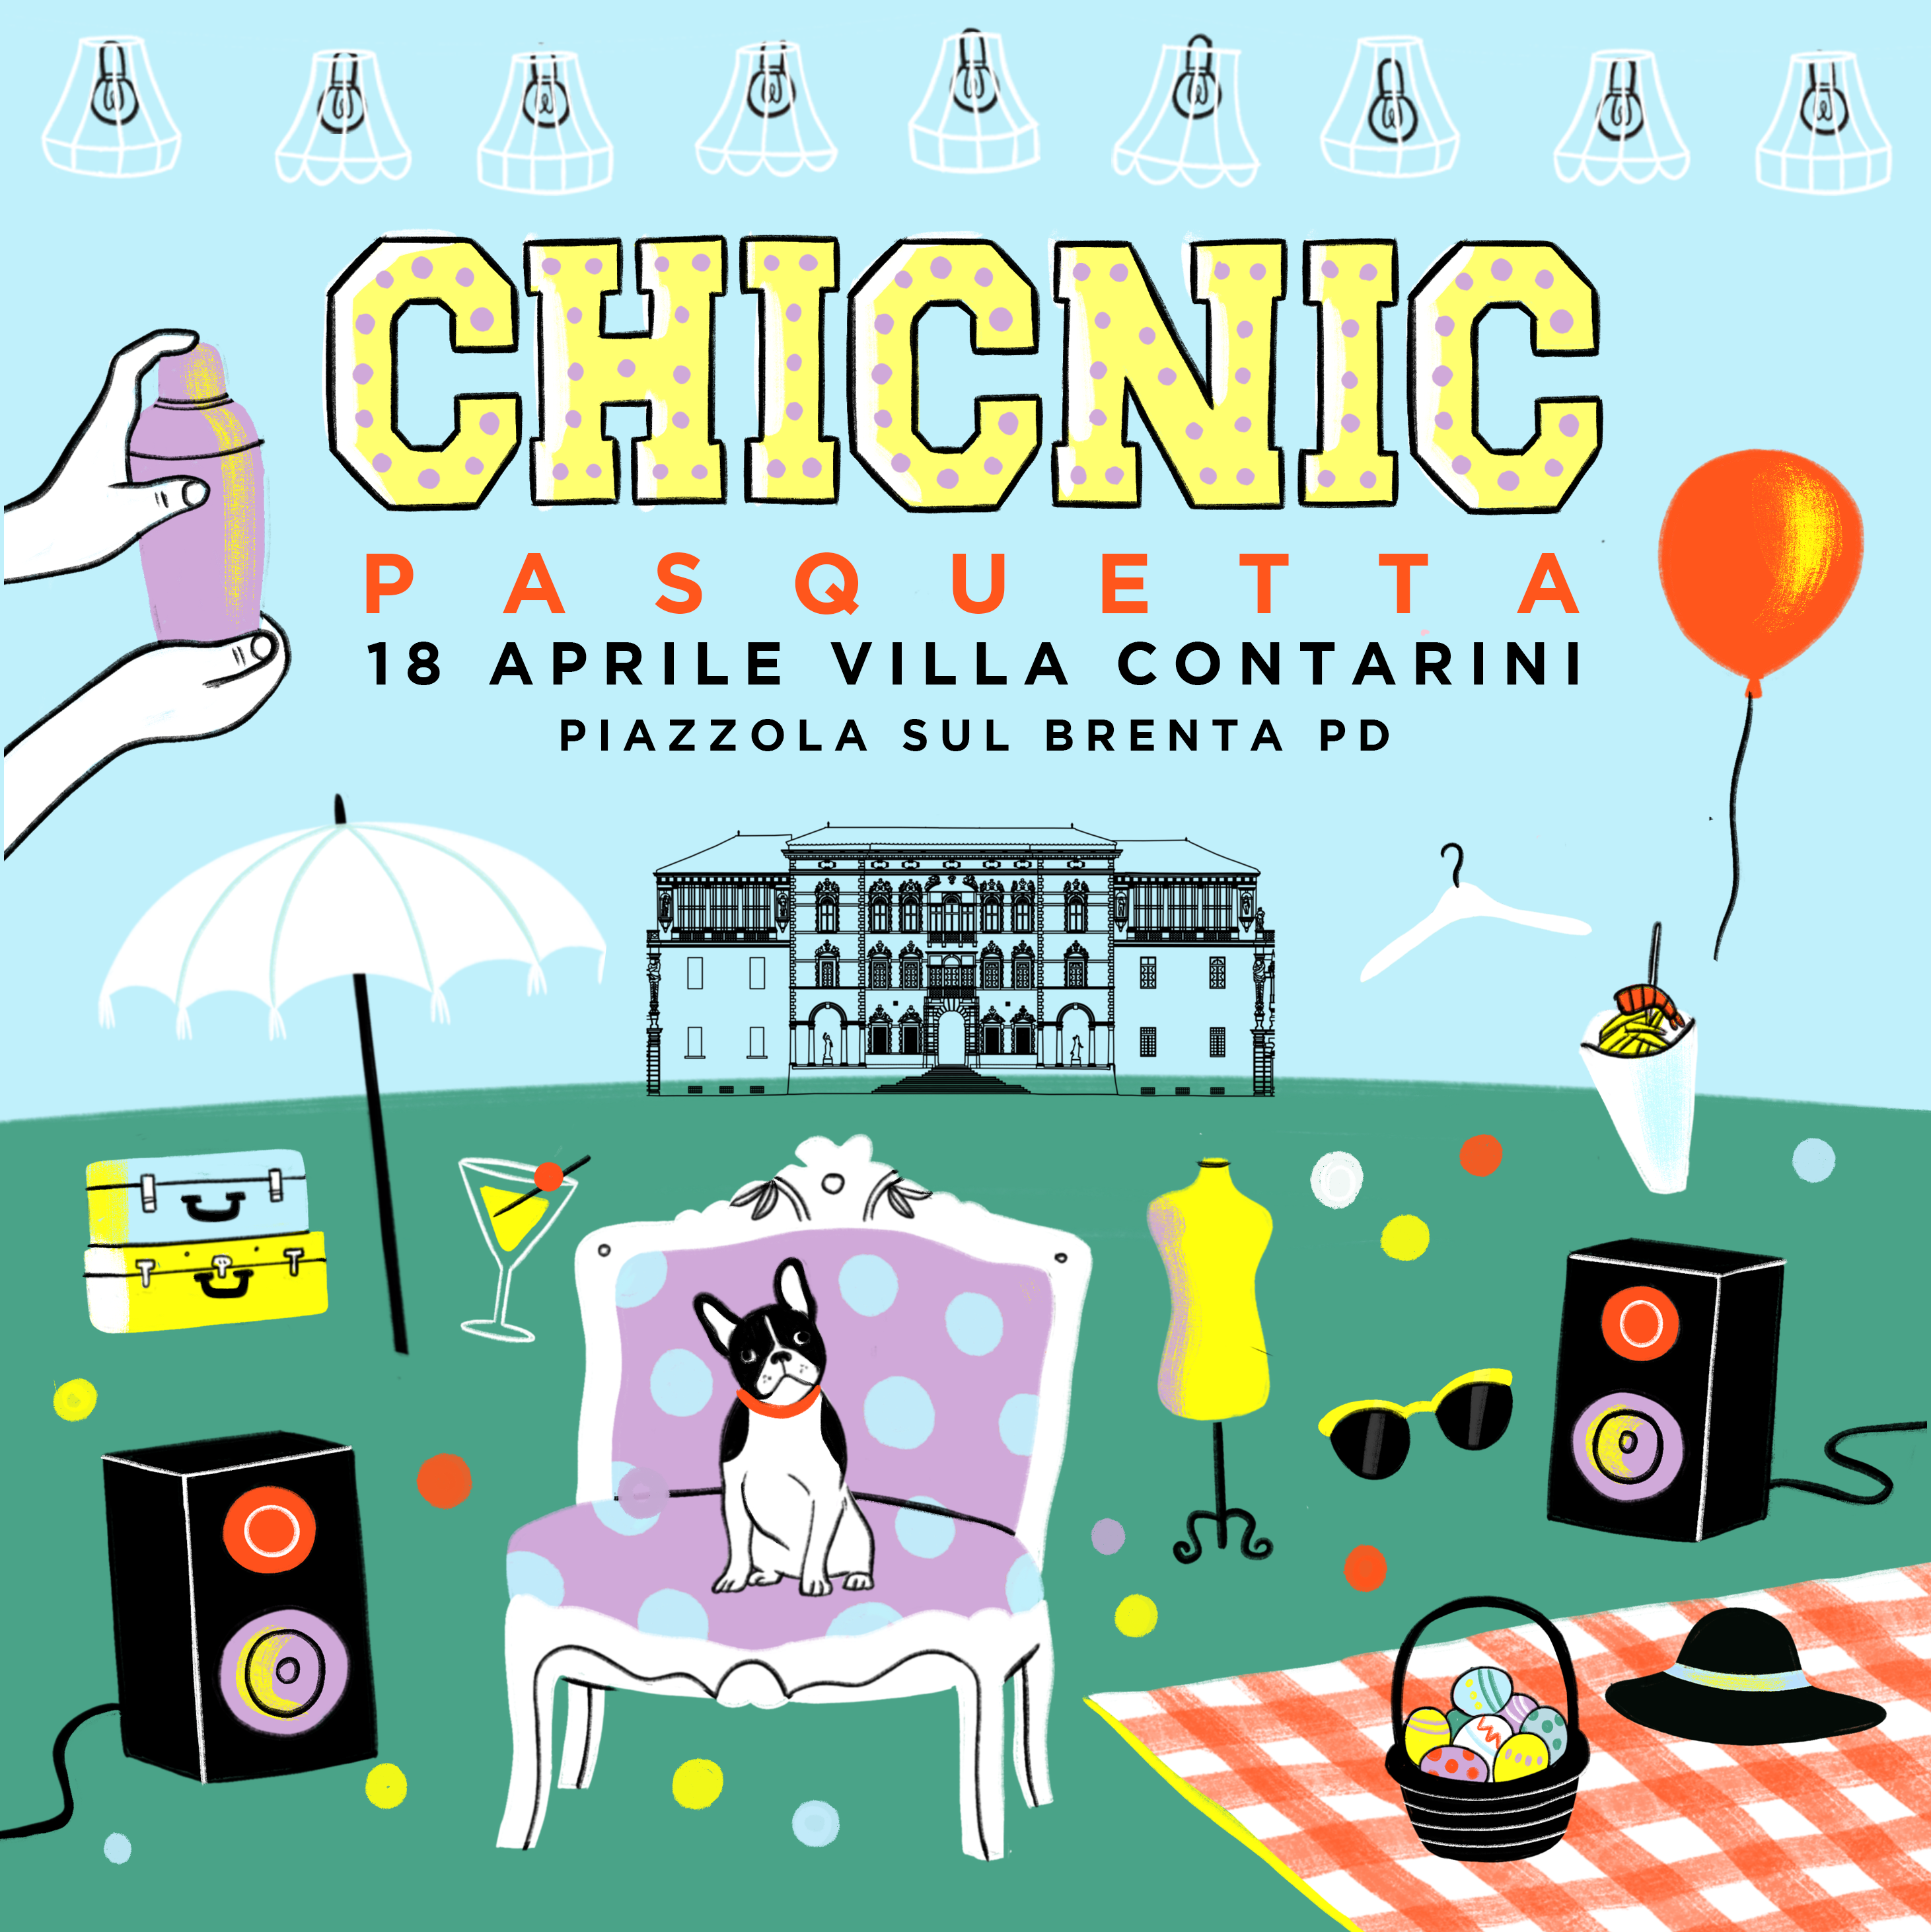 CHIC NIC Pasquetta 18.04.2022 // Villa Contarini